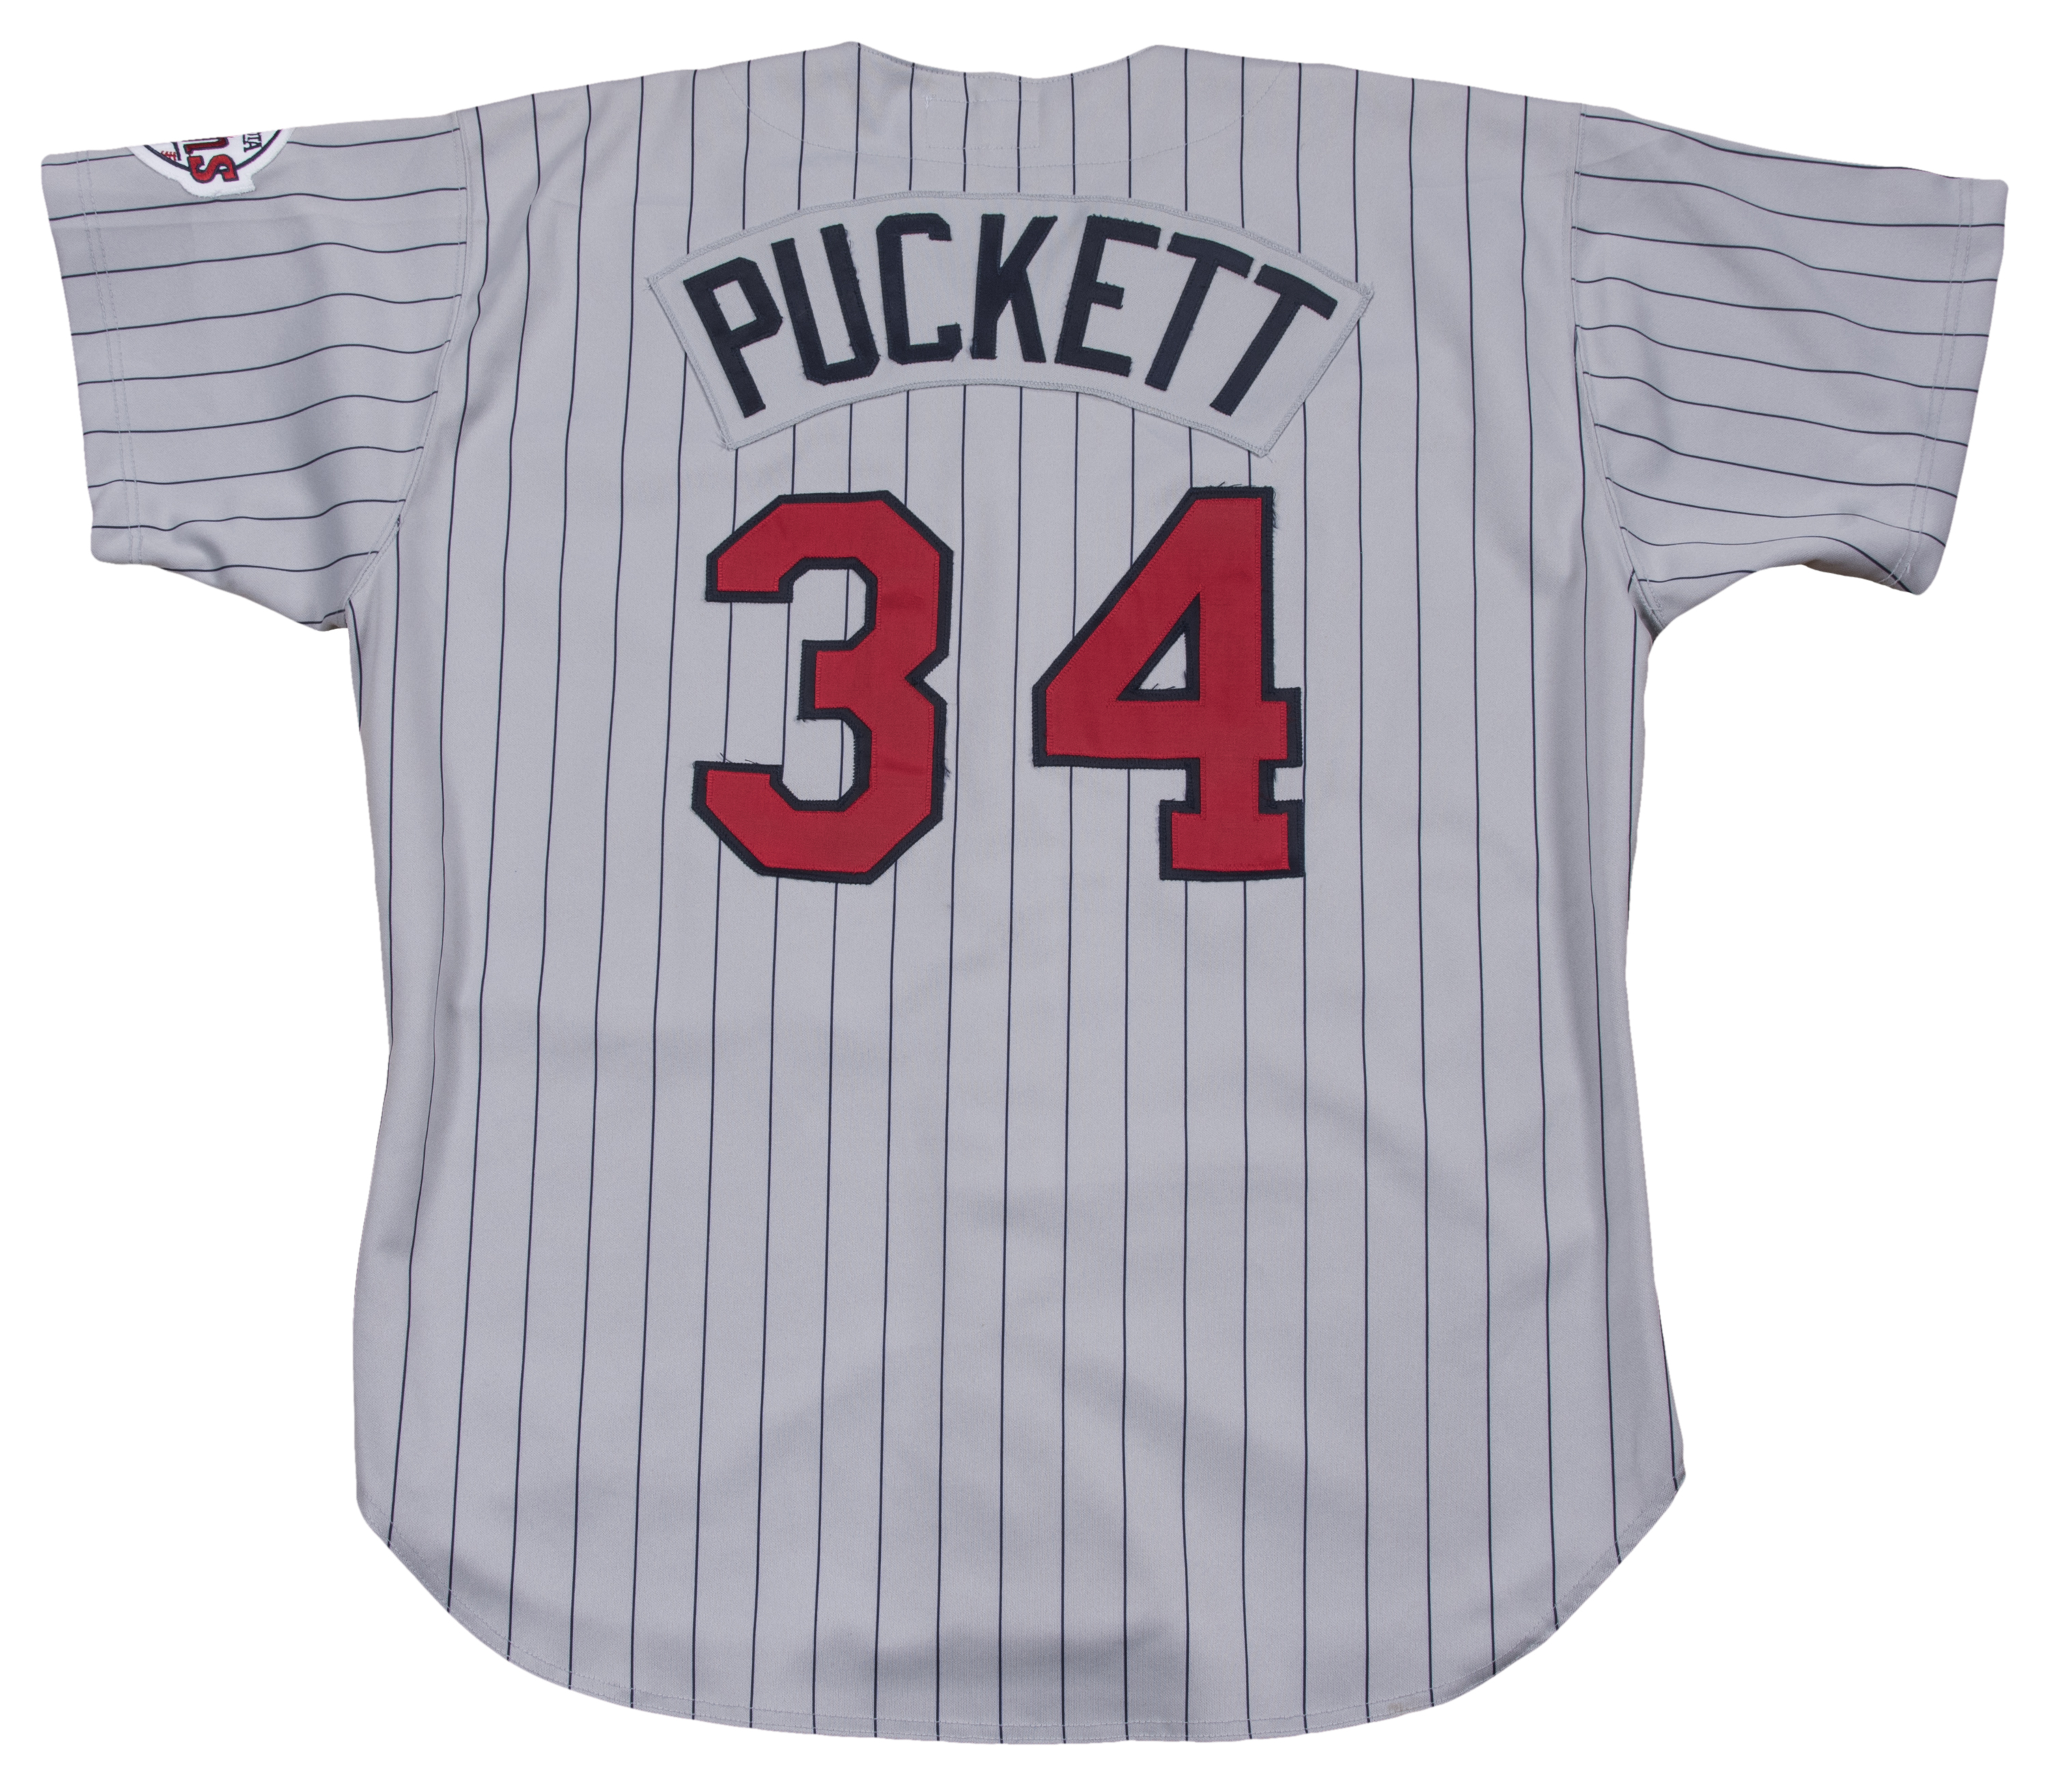 puckett jersey